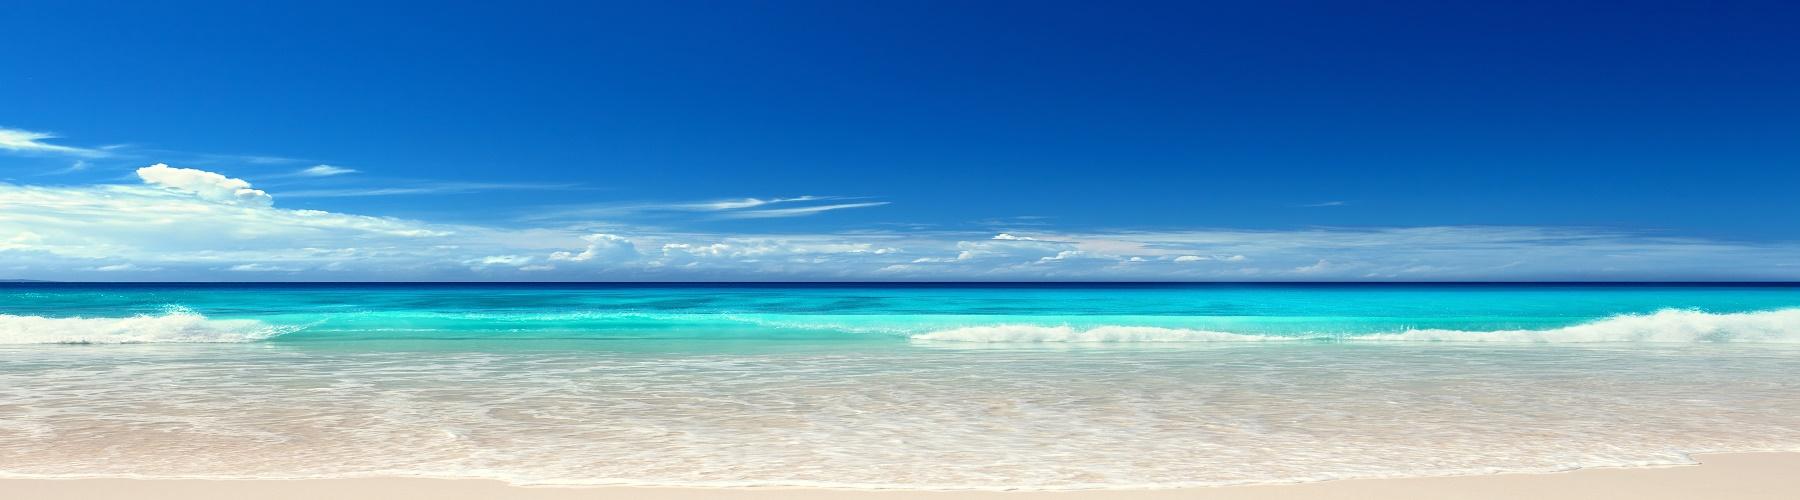 Самые известные пляжи Мексики